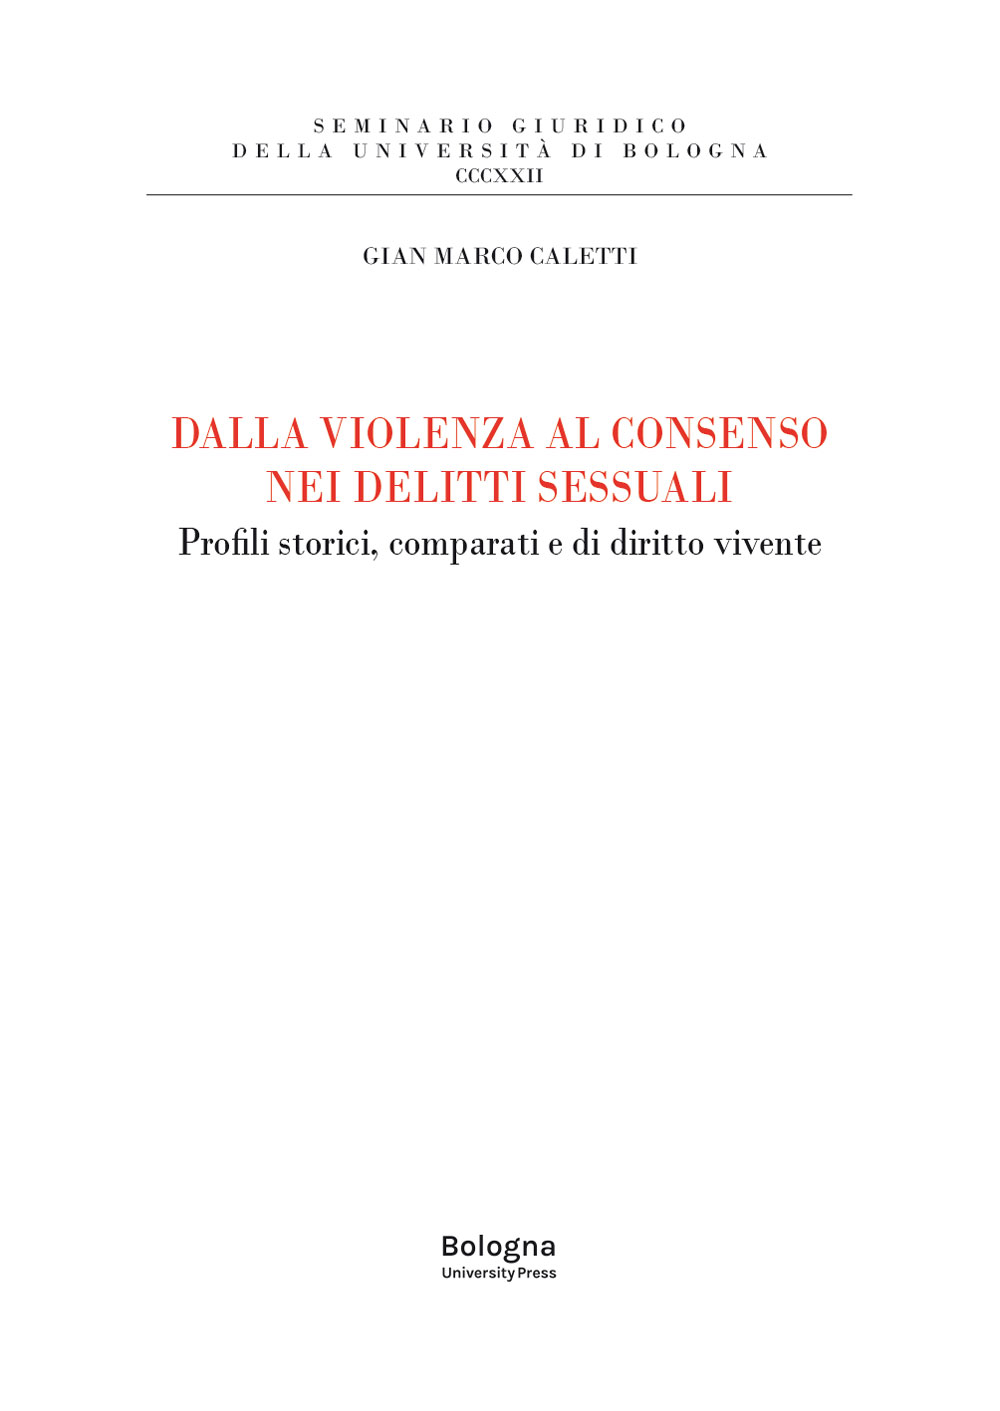 DALLA VIOLENZA AL CONSENSO NEI DELITTI SESSUALI - Bologna University Press